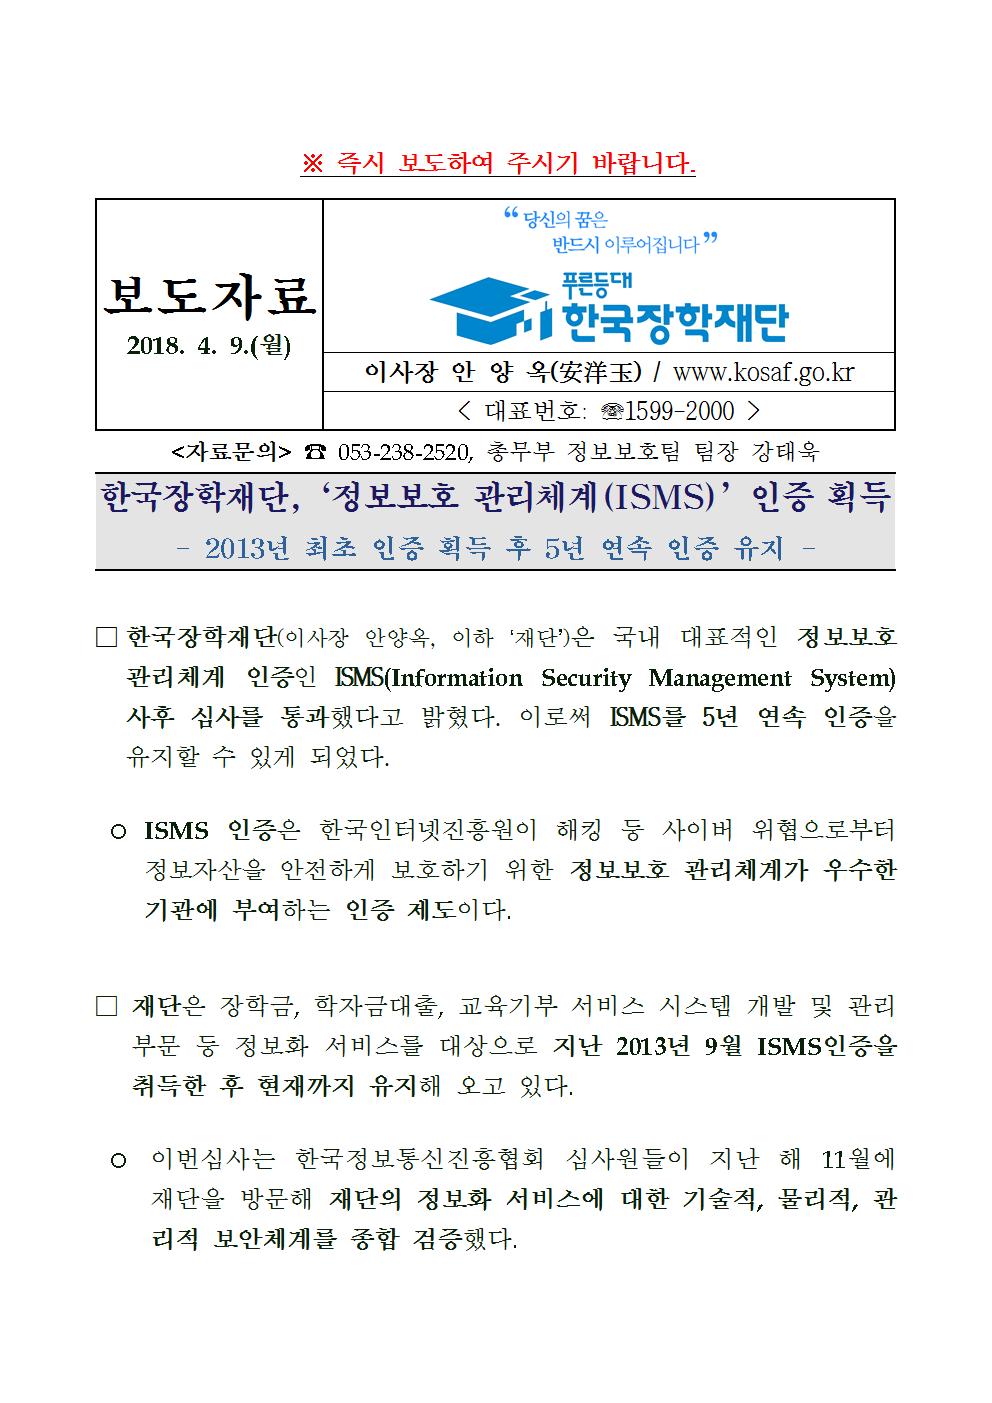 04-09(월)[보도자료] 한국장학재단, 정보보호 관리체계 인증 획득001.jpg